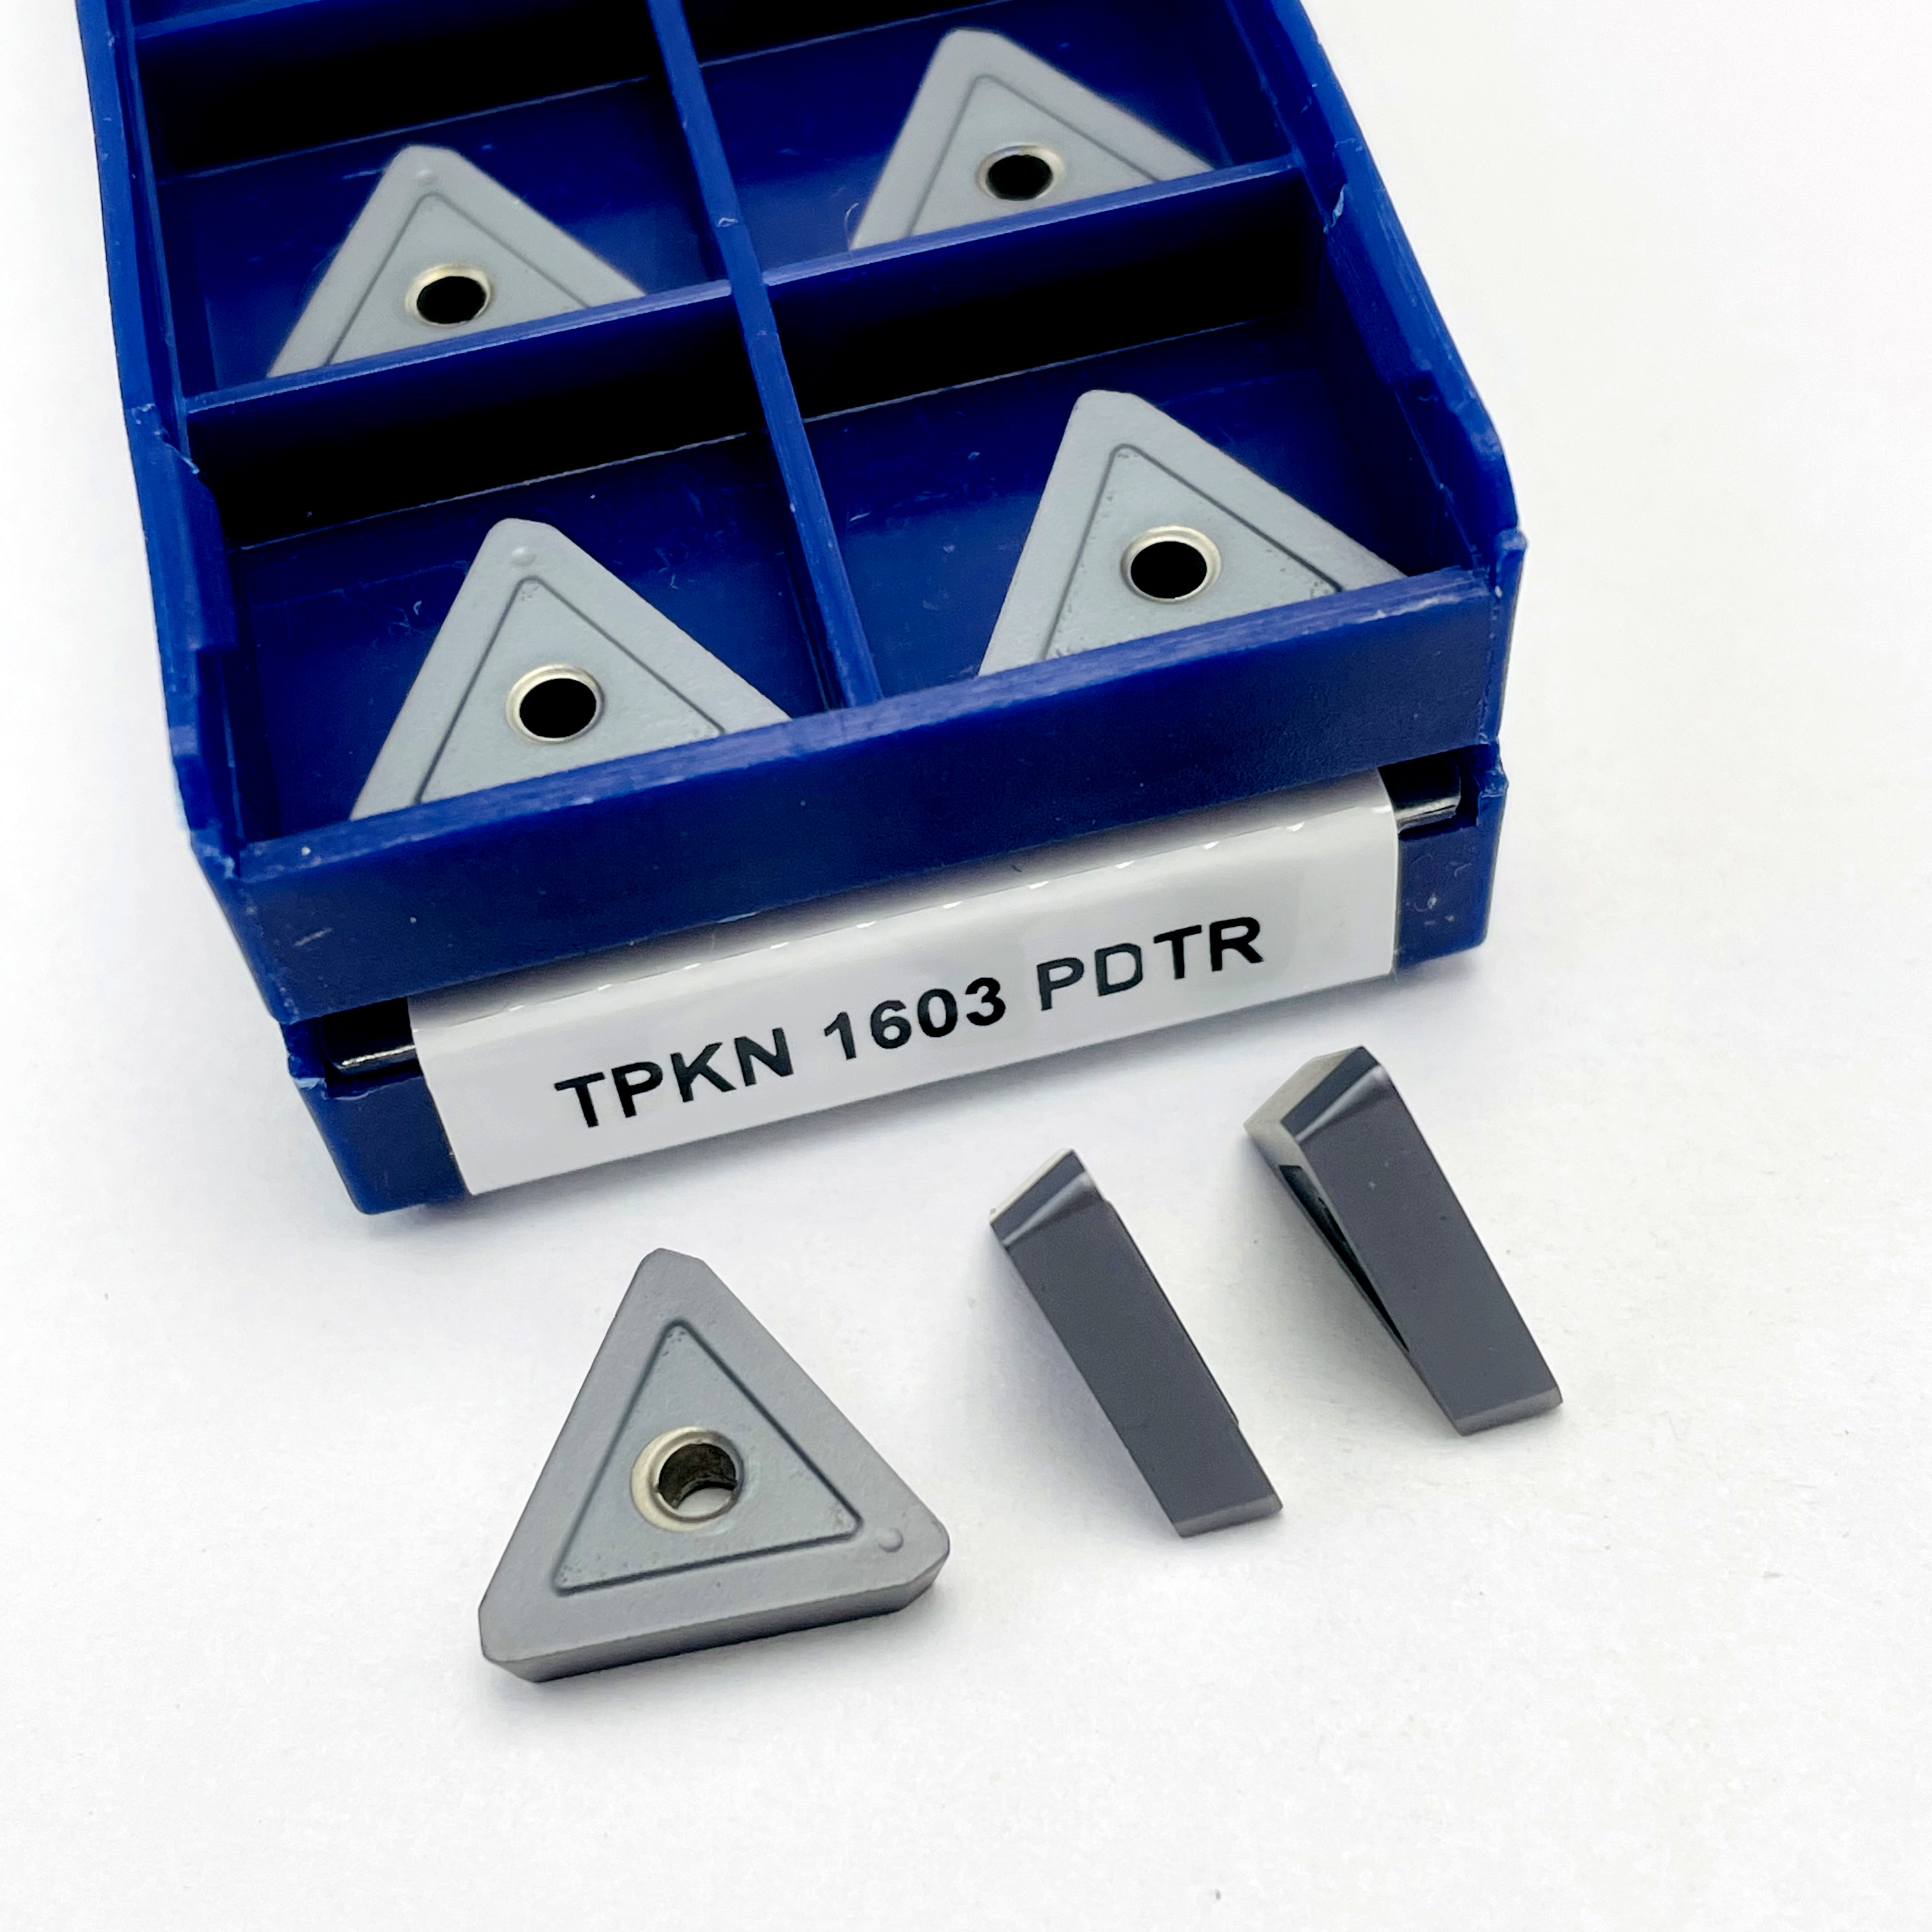 TPKR 1603 PDTR LT30 Advanced Mühlenschneider Carbid Insert Turning Tool TPKN1603 PDTR Mühlenschneider CNC Cutter TPKN